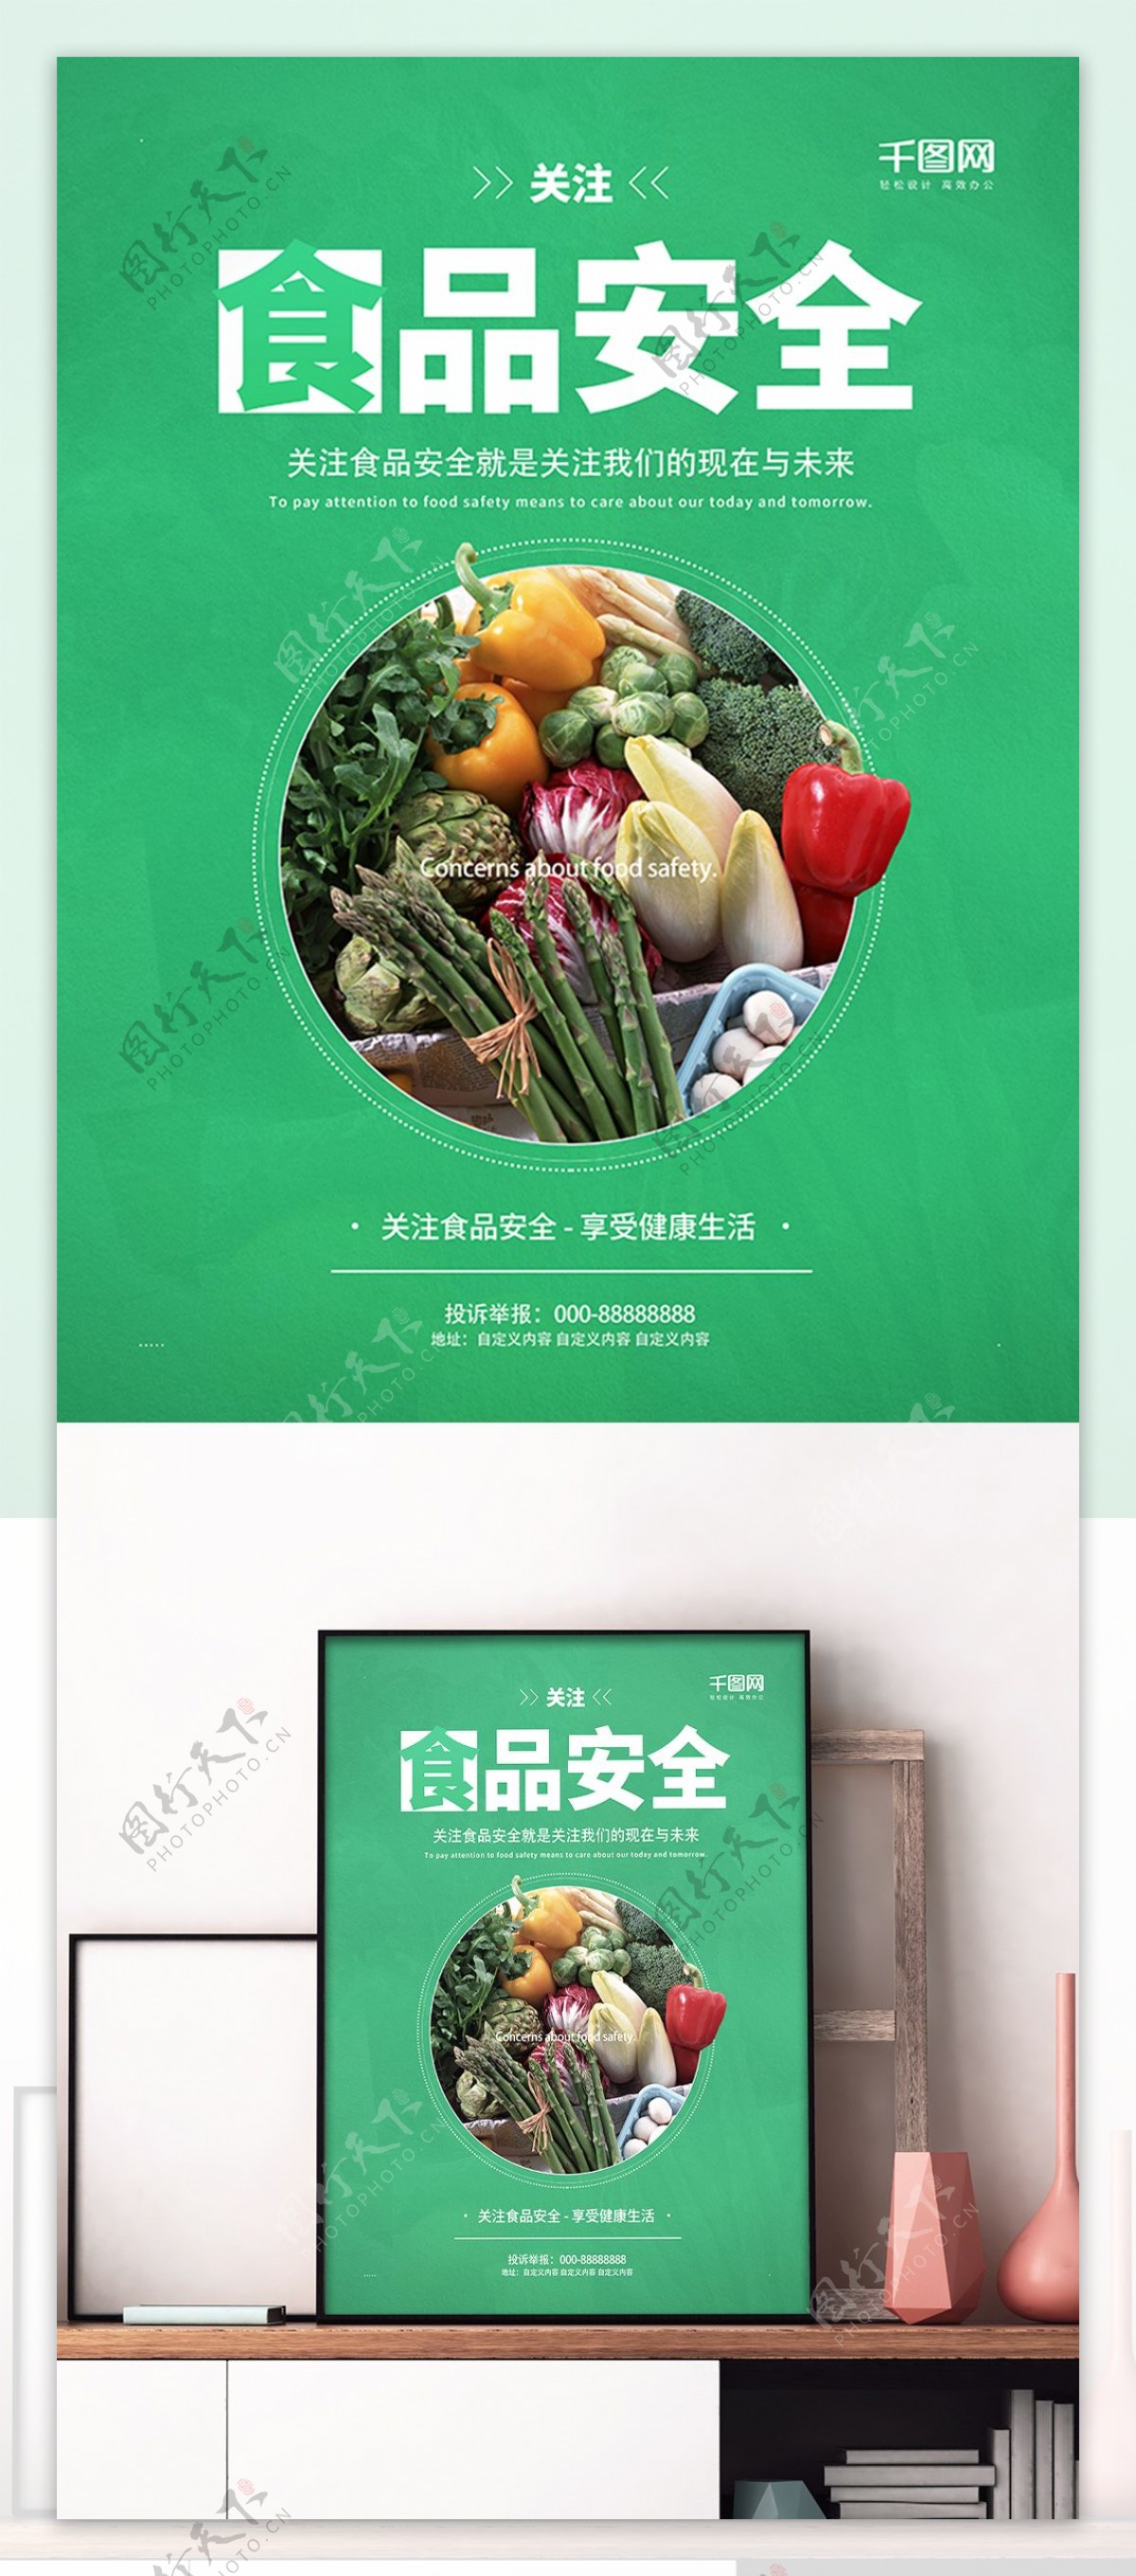 质量月绿色素雅干净关注食品安全蔬菜水果公益海报